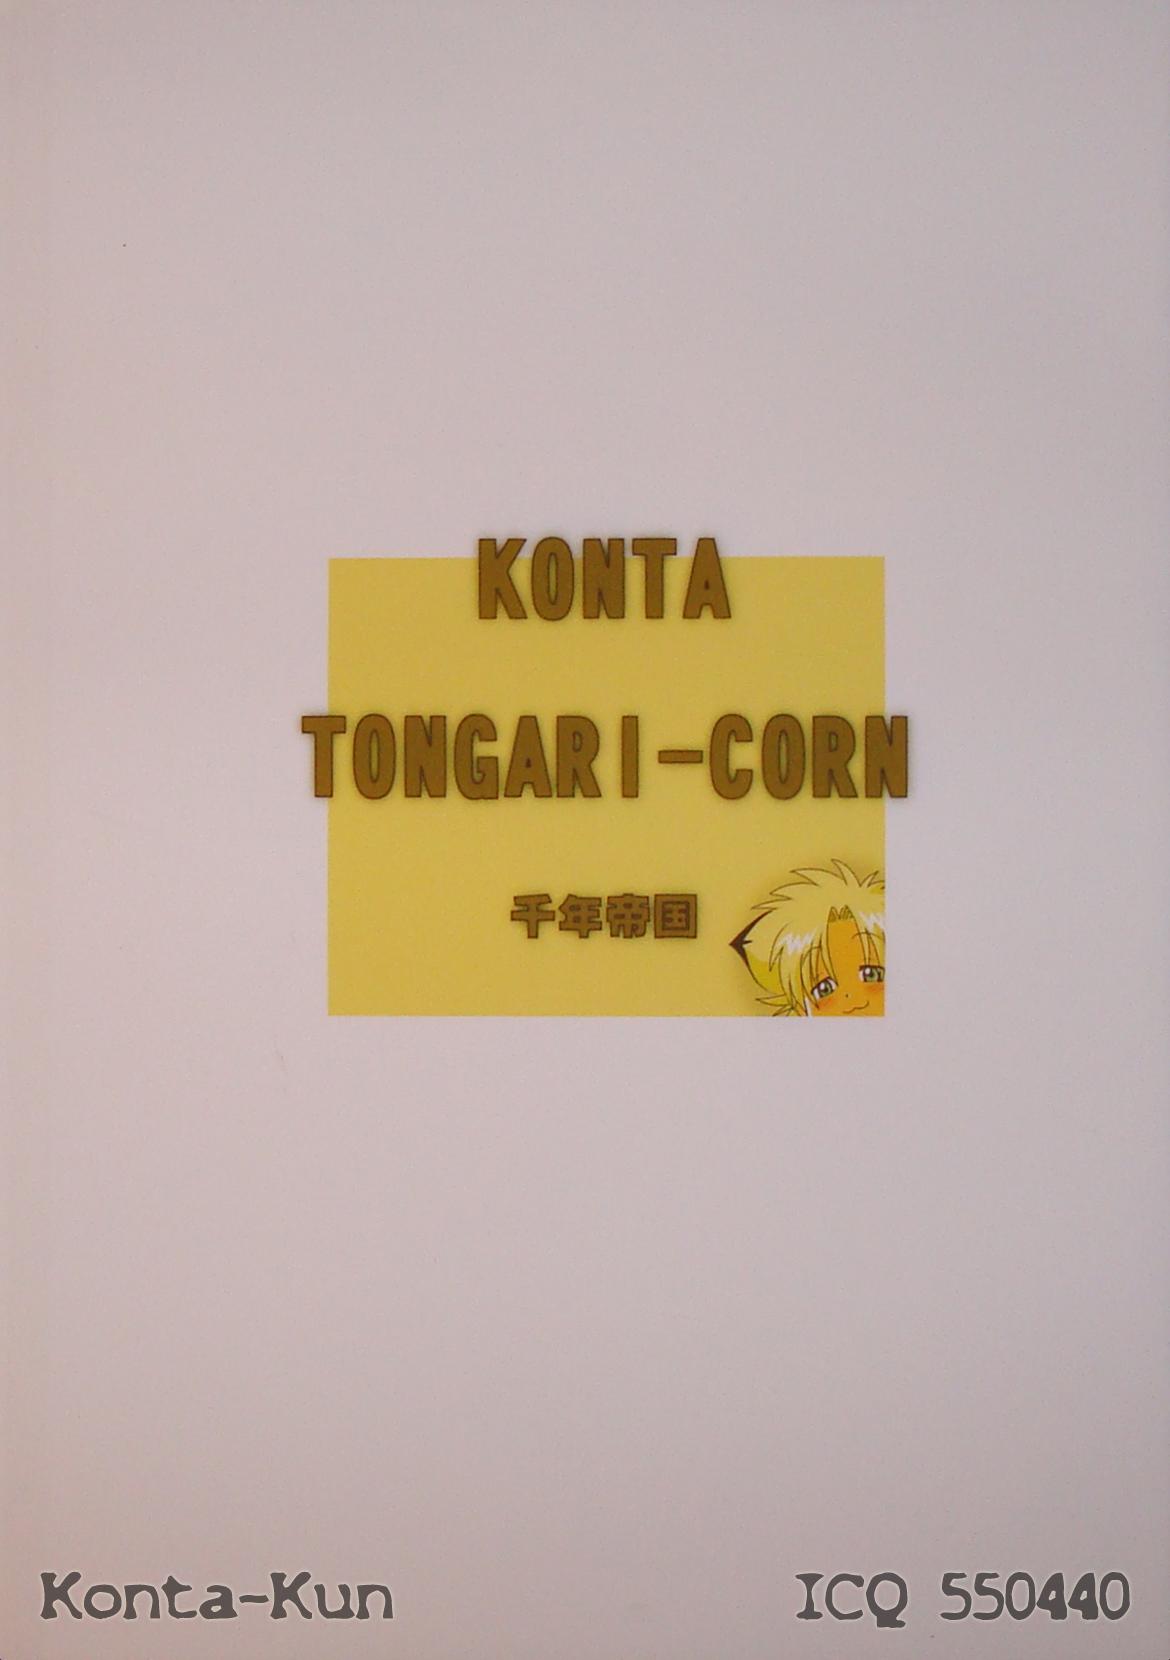 Tongari-Corn 11